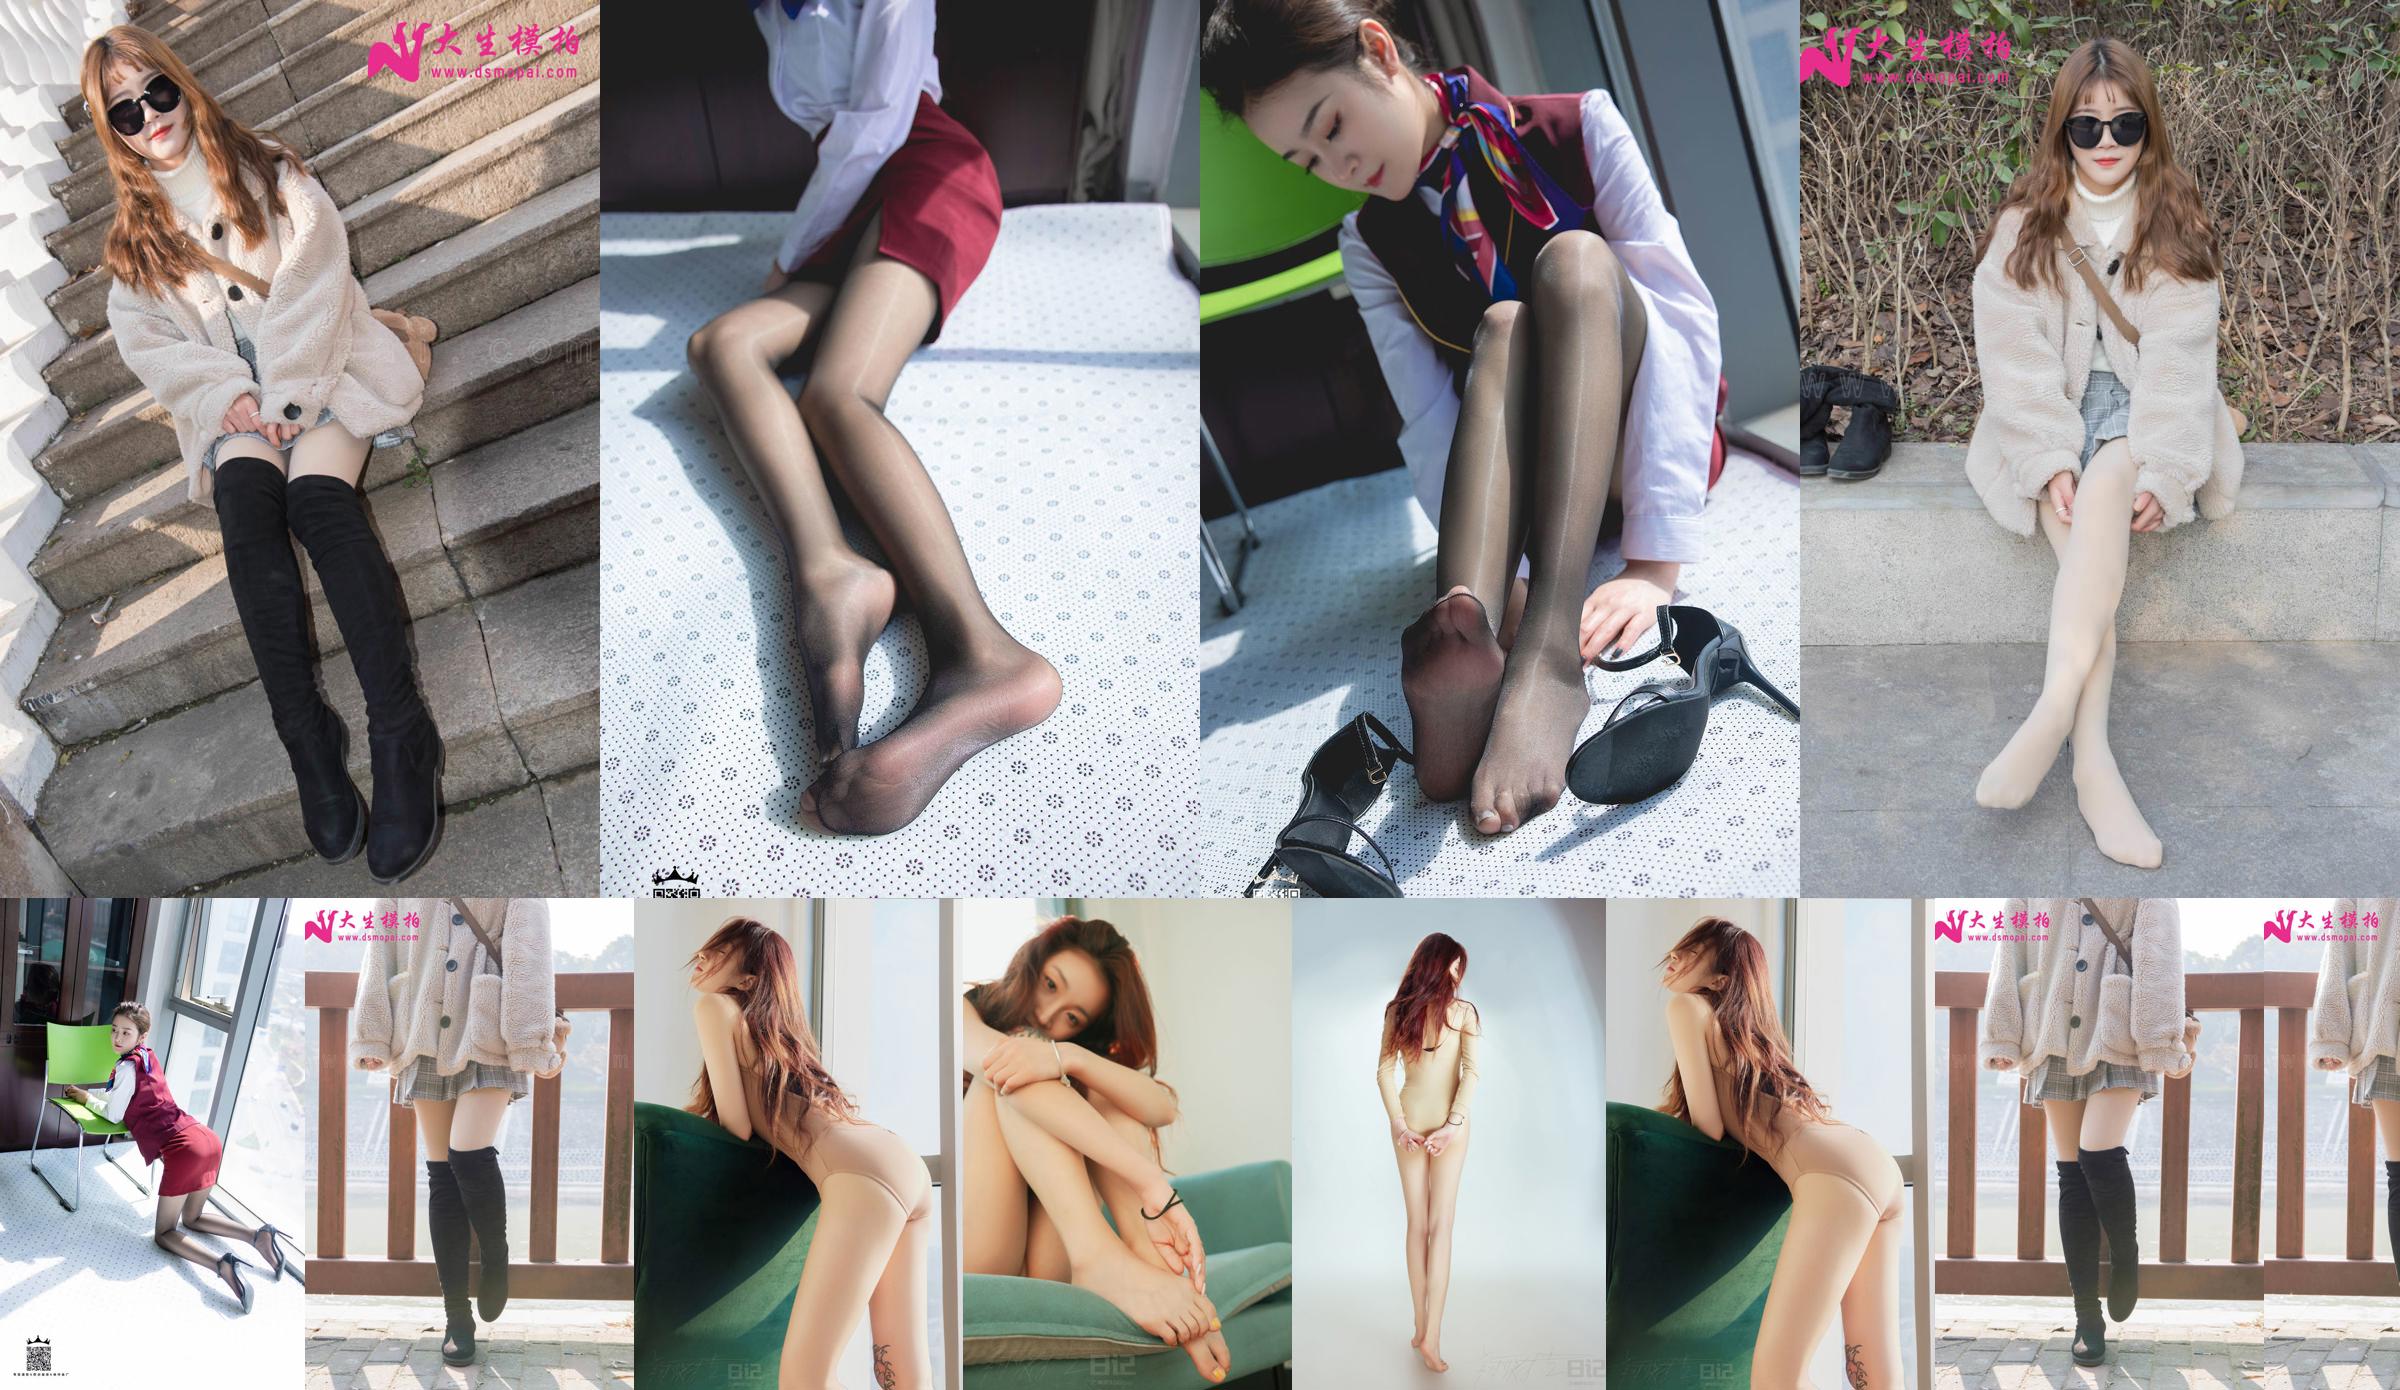 [Съемка модели Dasheng] No.111 Jiaojiao Outdoor Bare Leg Artifact No.442991 Страница 1